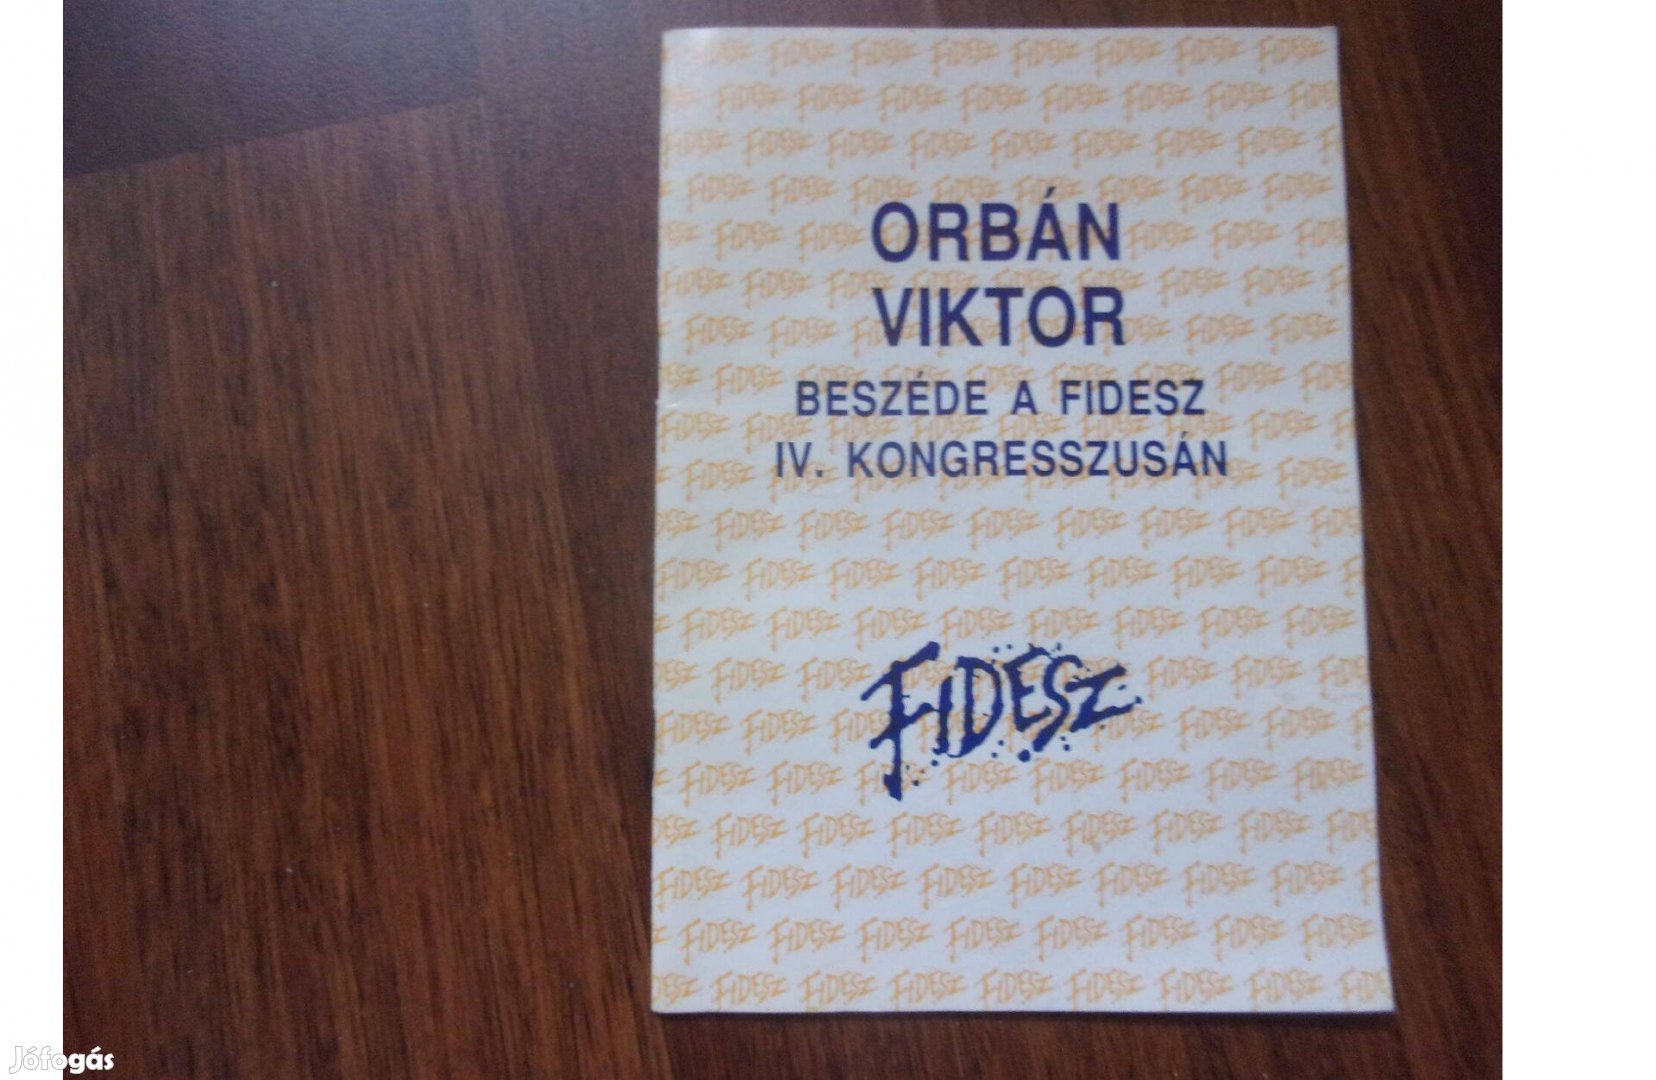 Orbán Viktor beszéde a Fidesz IV. kongresszusán 1992